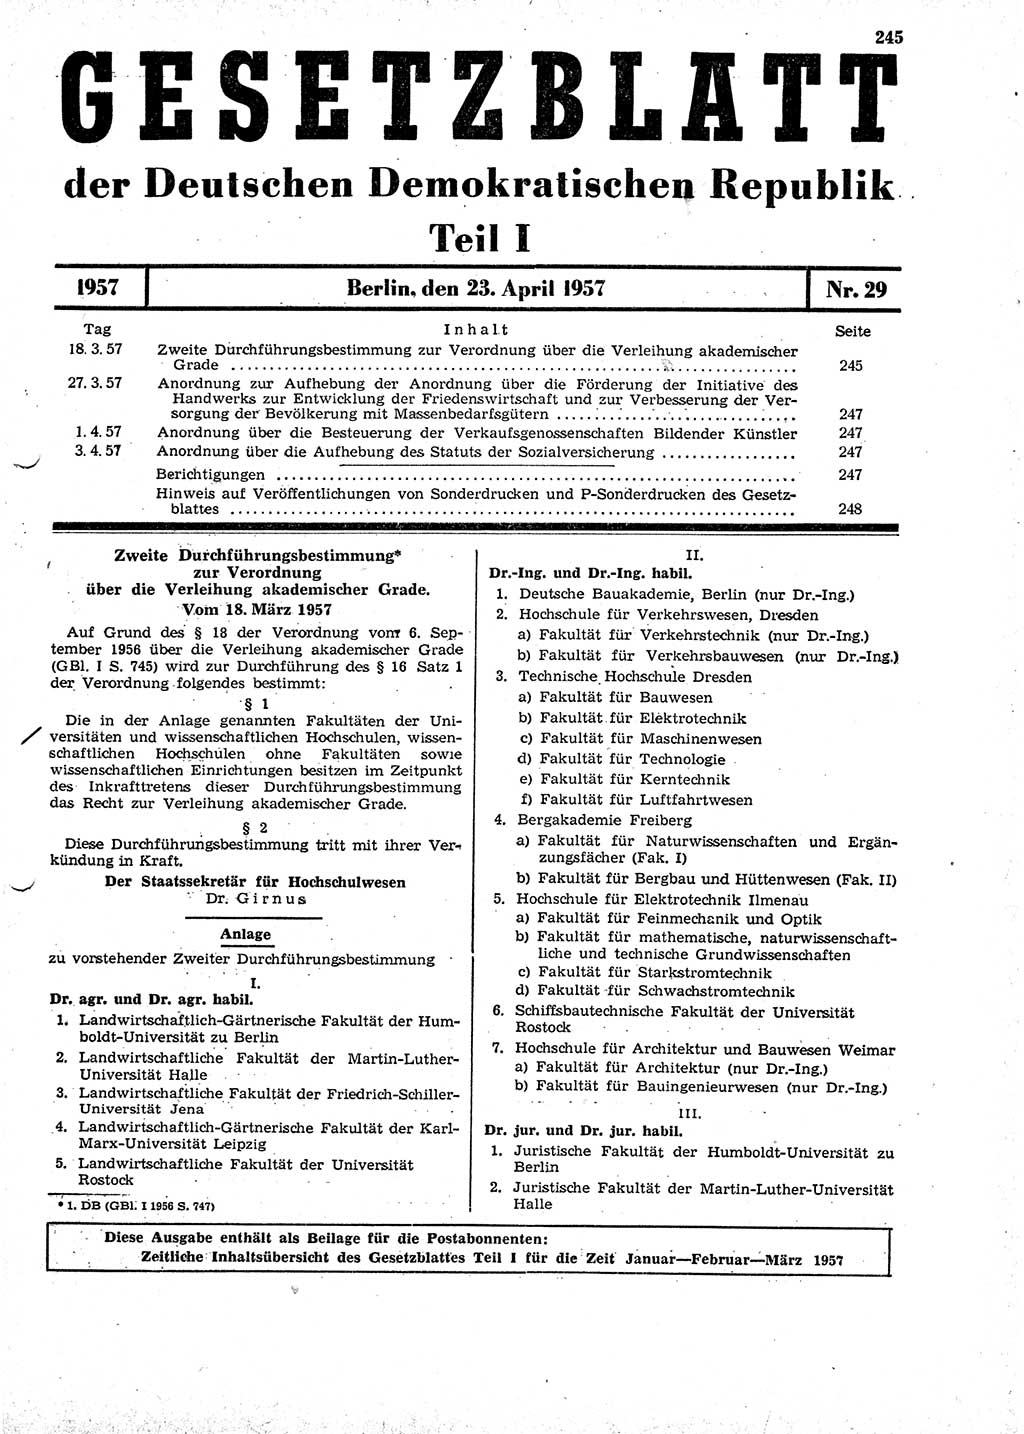 Gesetzblatt (GBl.) der Deutschen Demokratischen Republik (DDR) Teil Ⅰ 1957, Seite 245 (GBl. DDR Ⅰ 1957, S. 245)